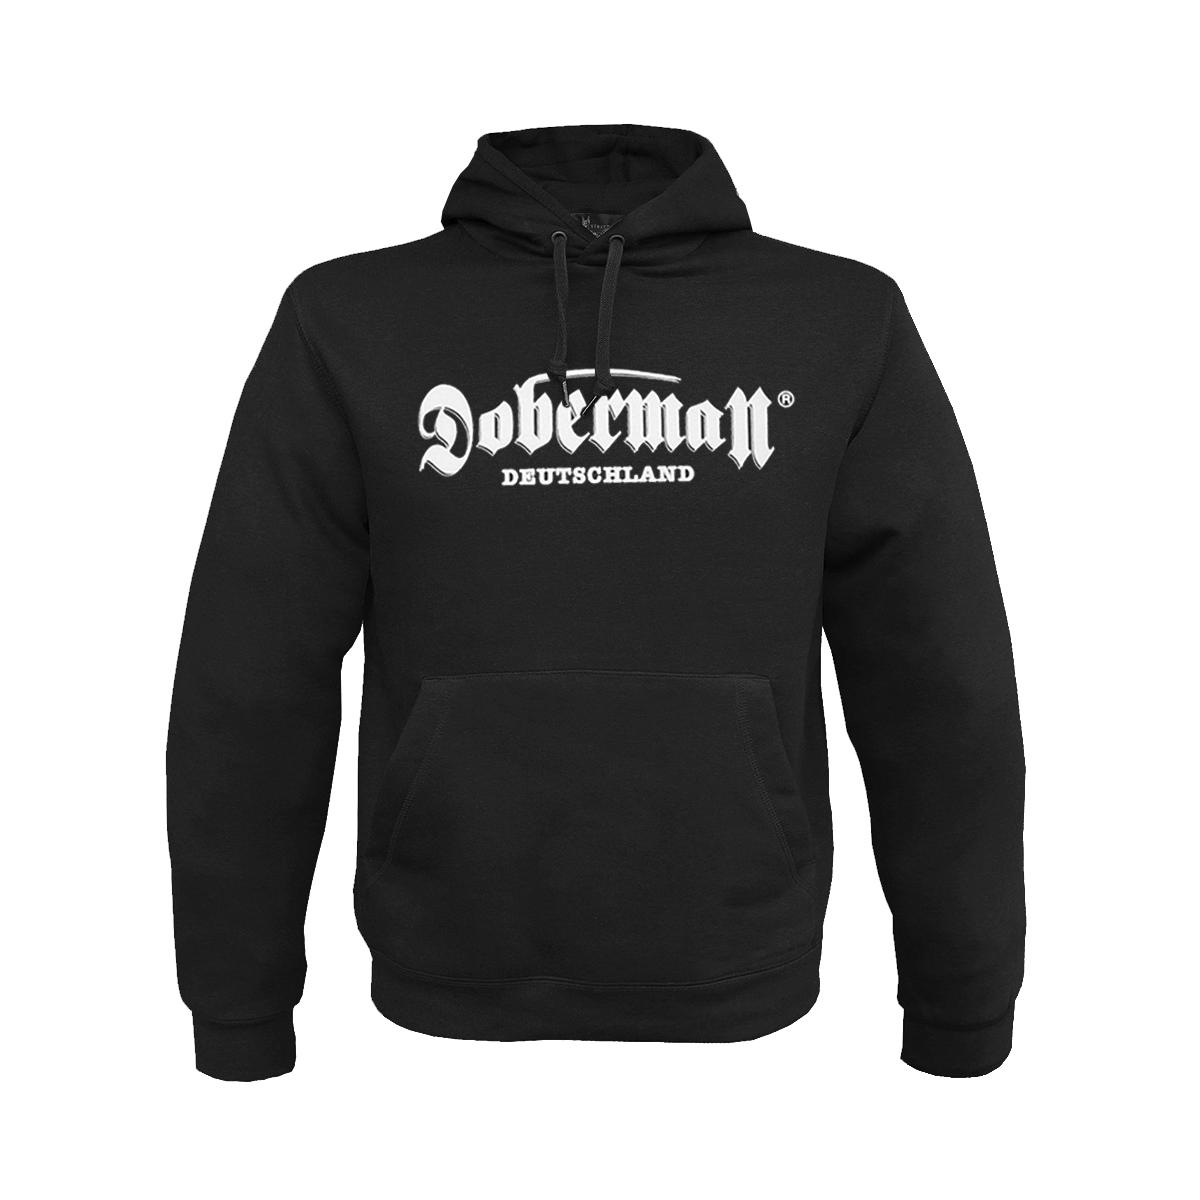 Doberman - Männer Kapuzenpullover - Attack